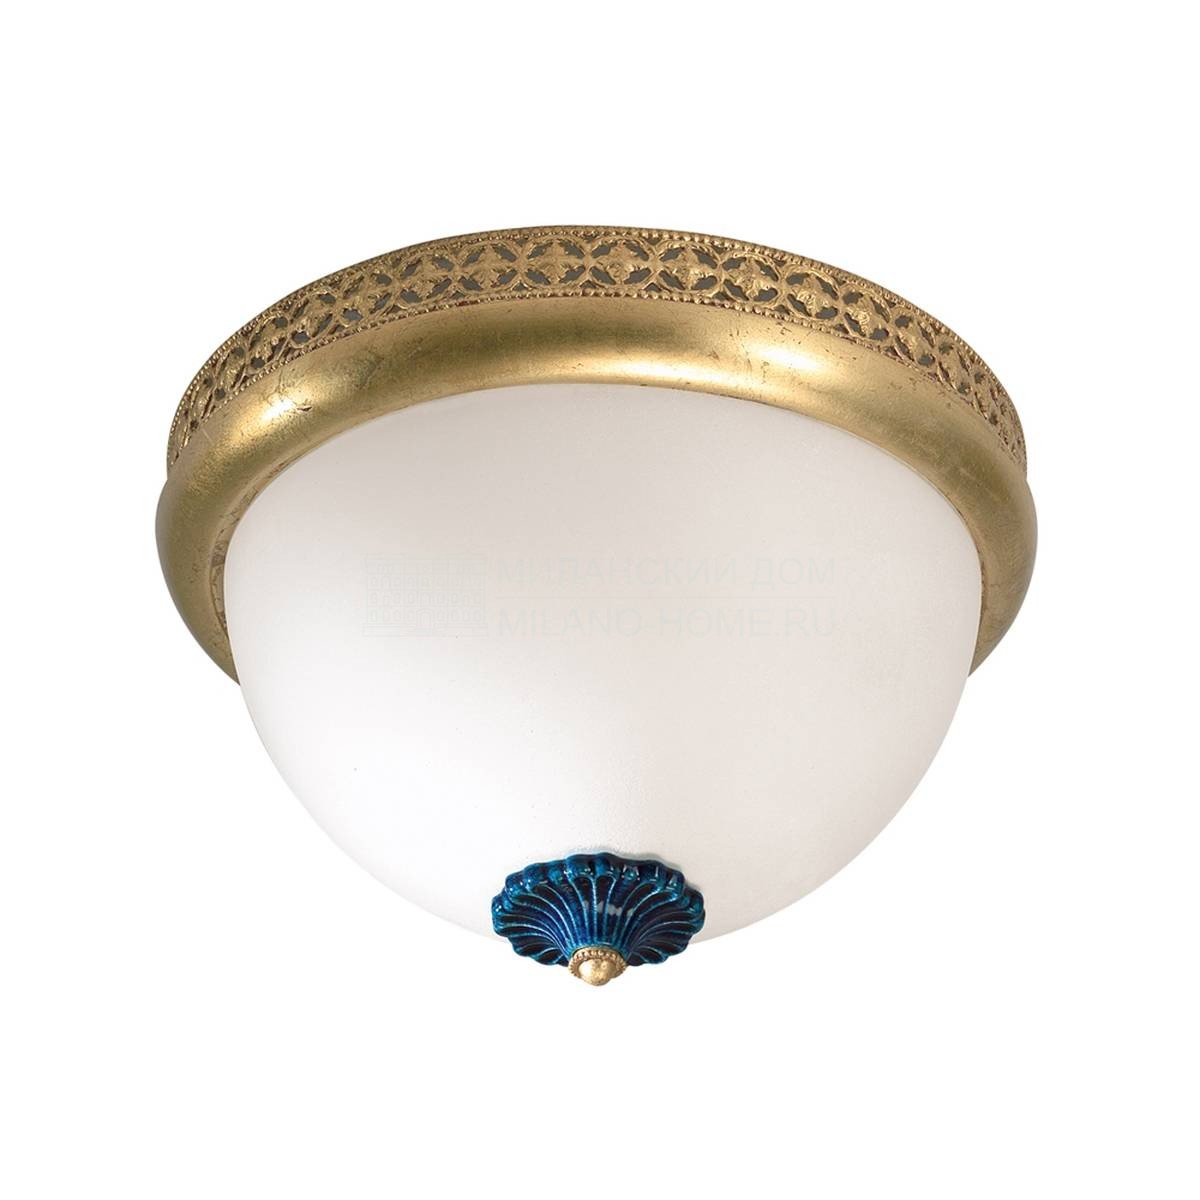 Потолочный светильник Excelsior ceiling light из Италии фабрики MARIONI